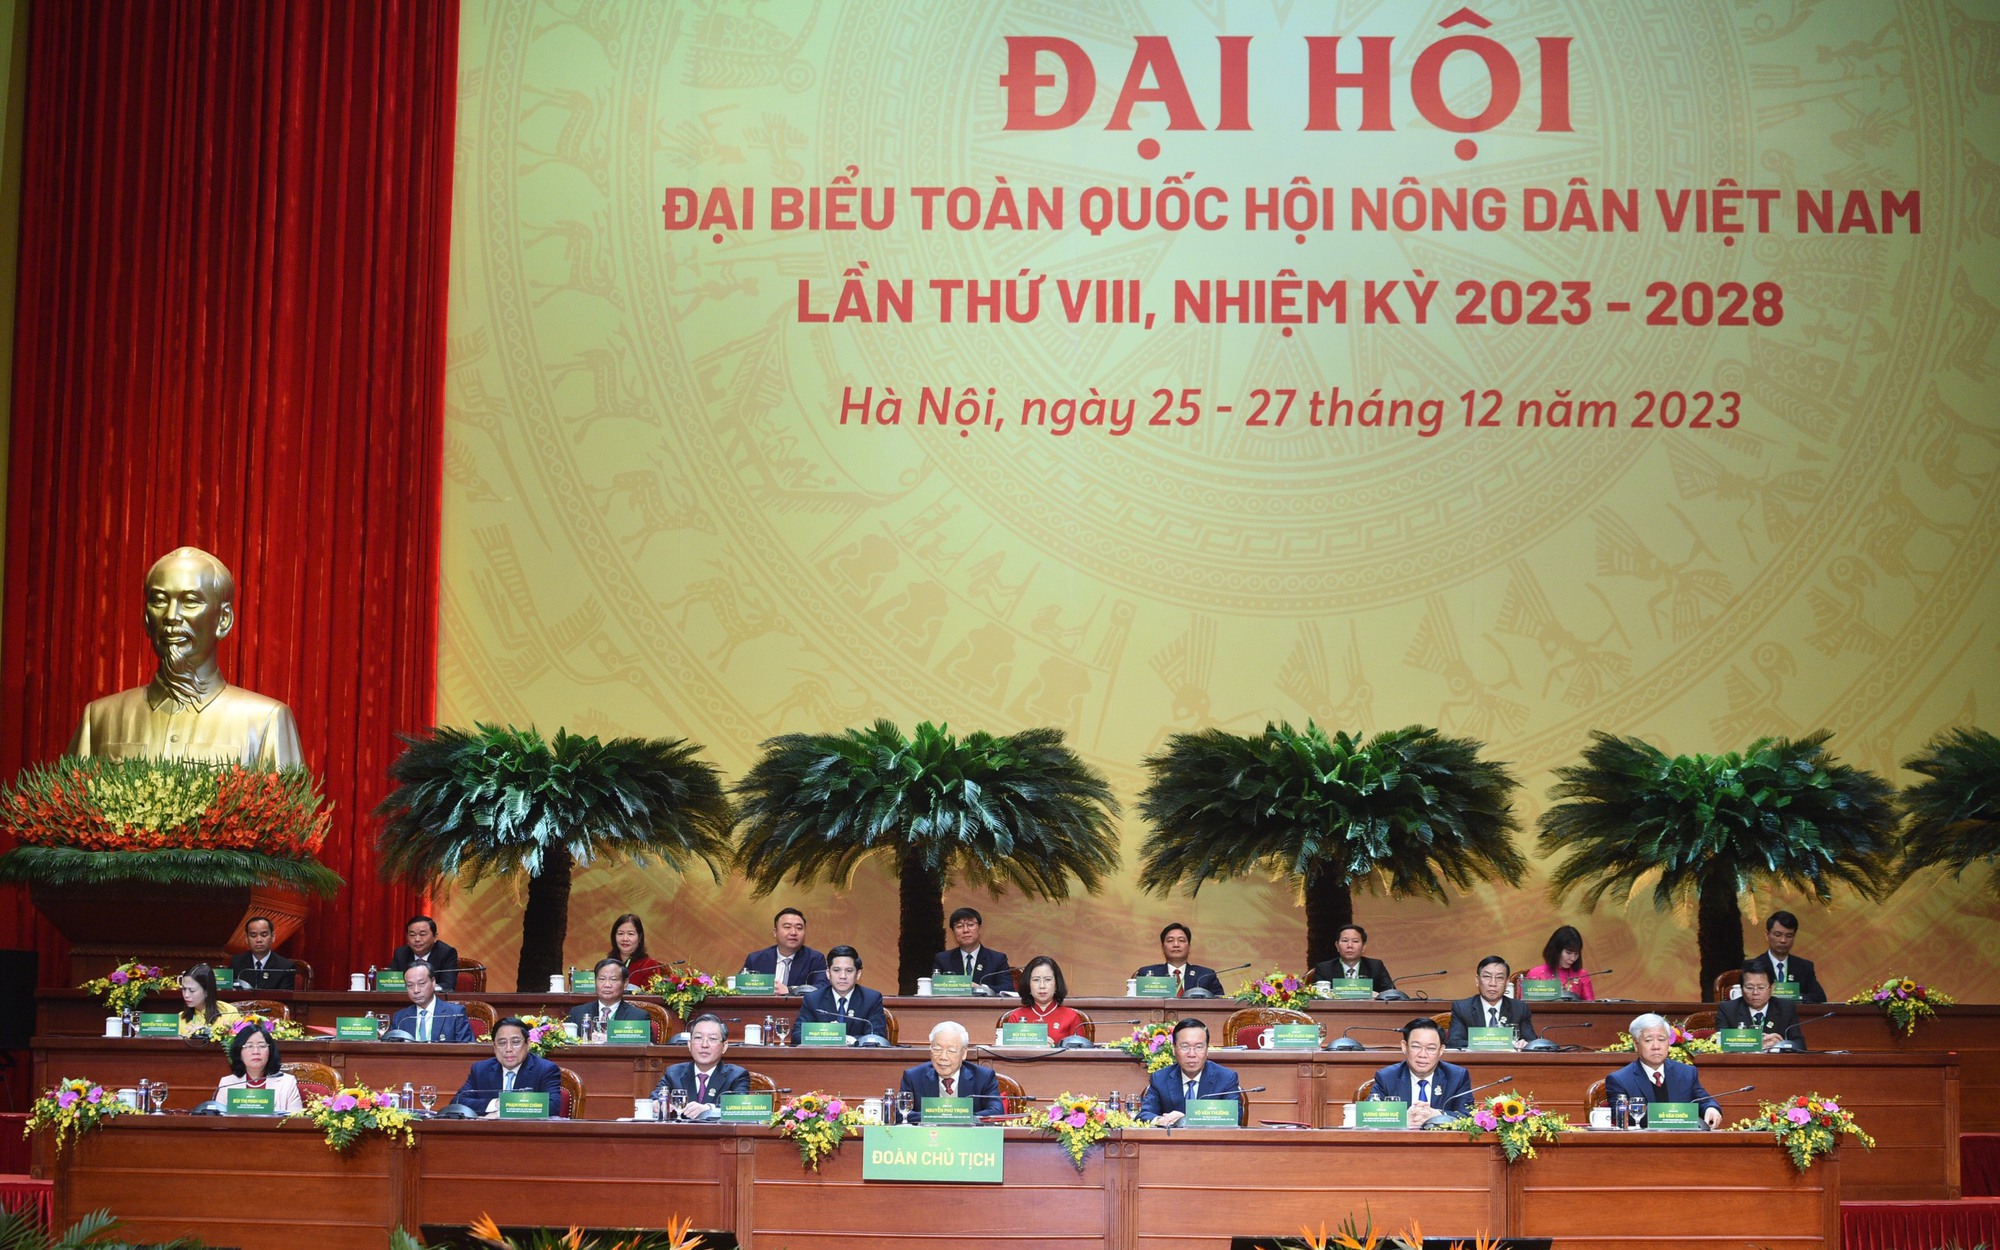 [TRỰC TIẾP] Khai mạc Đại hội đại biểu toàn quốc Hội nông dân Việt Nam lần thứ VIII, nhiệm kỳ 2023 - 2028